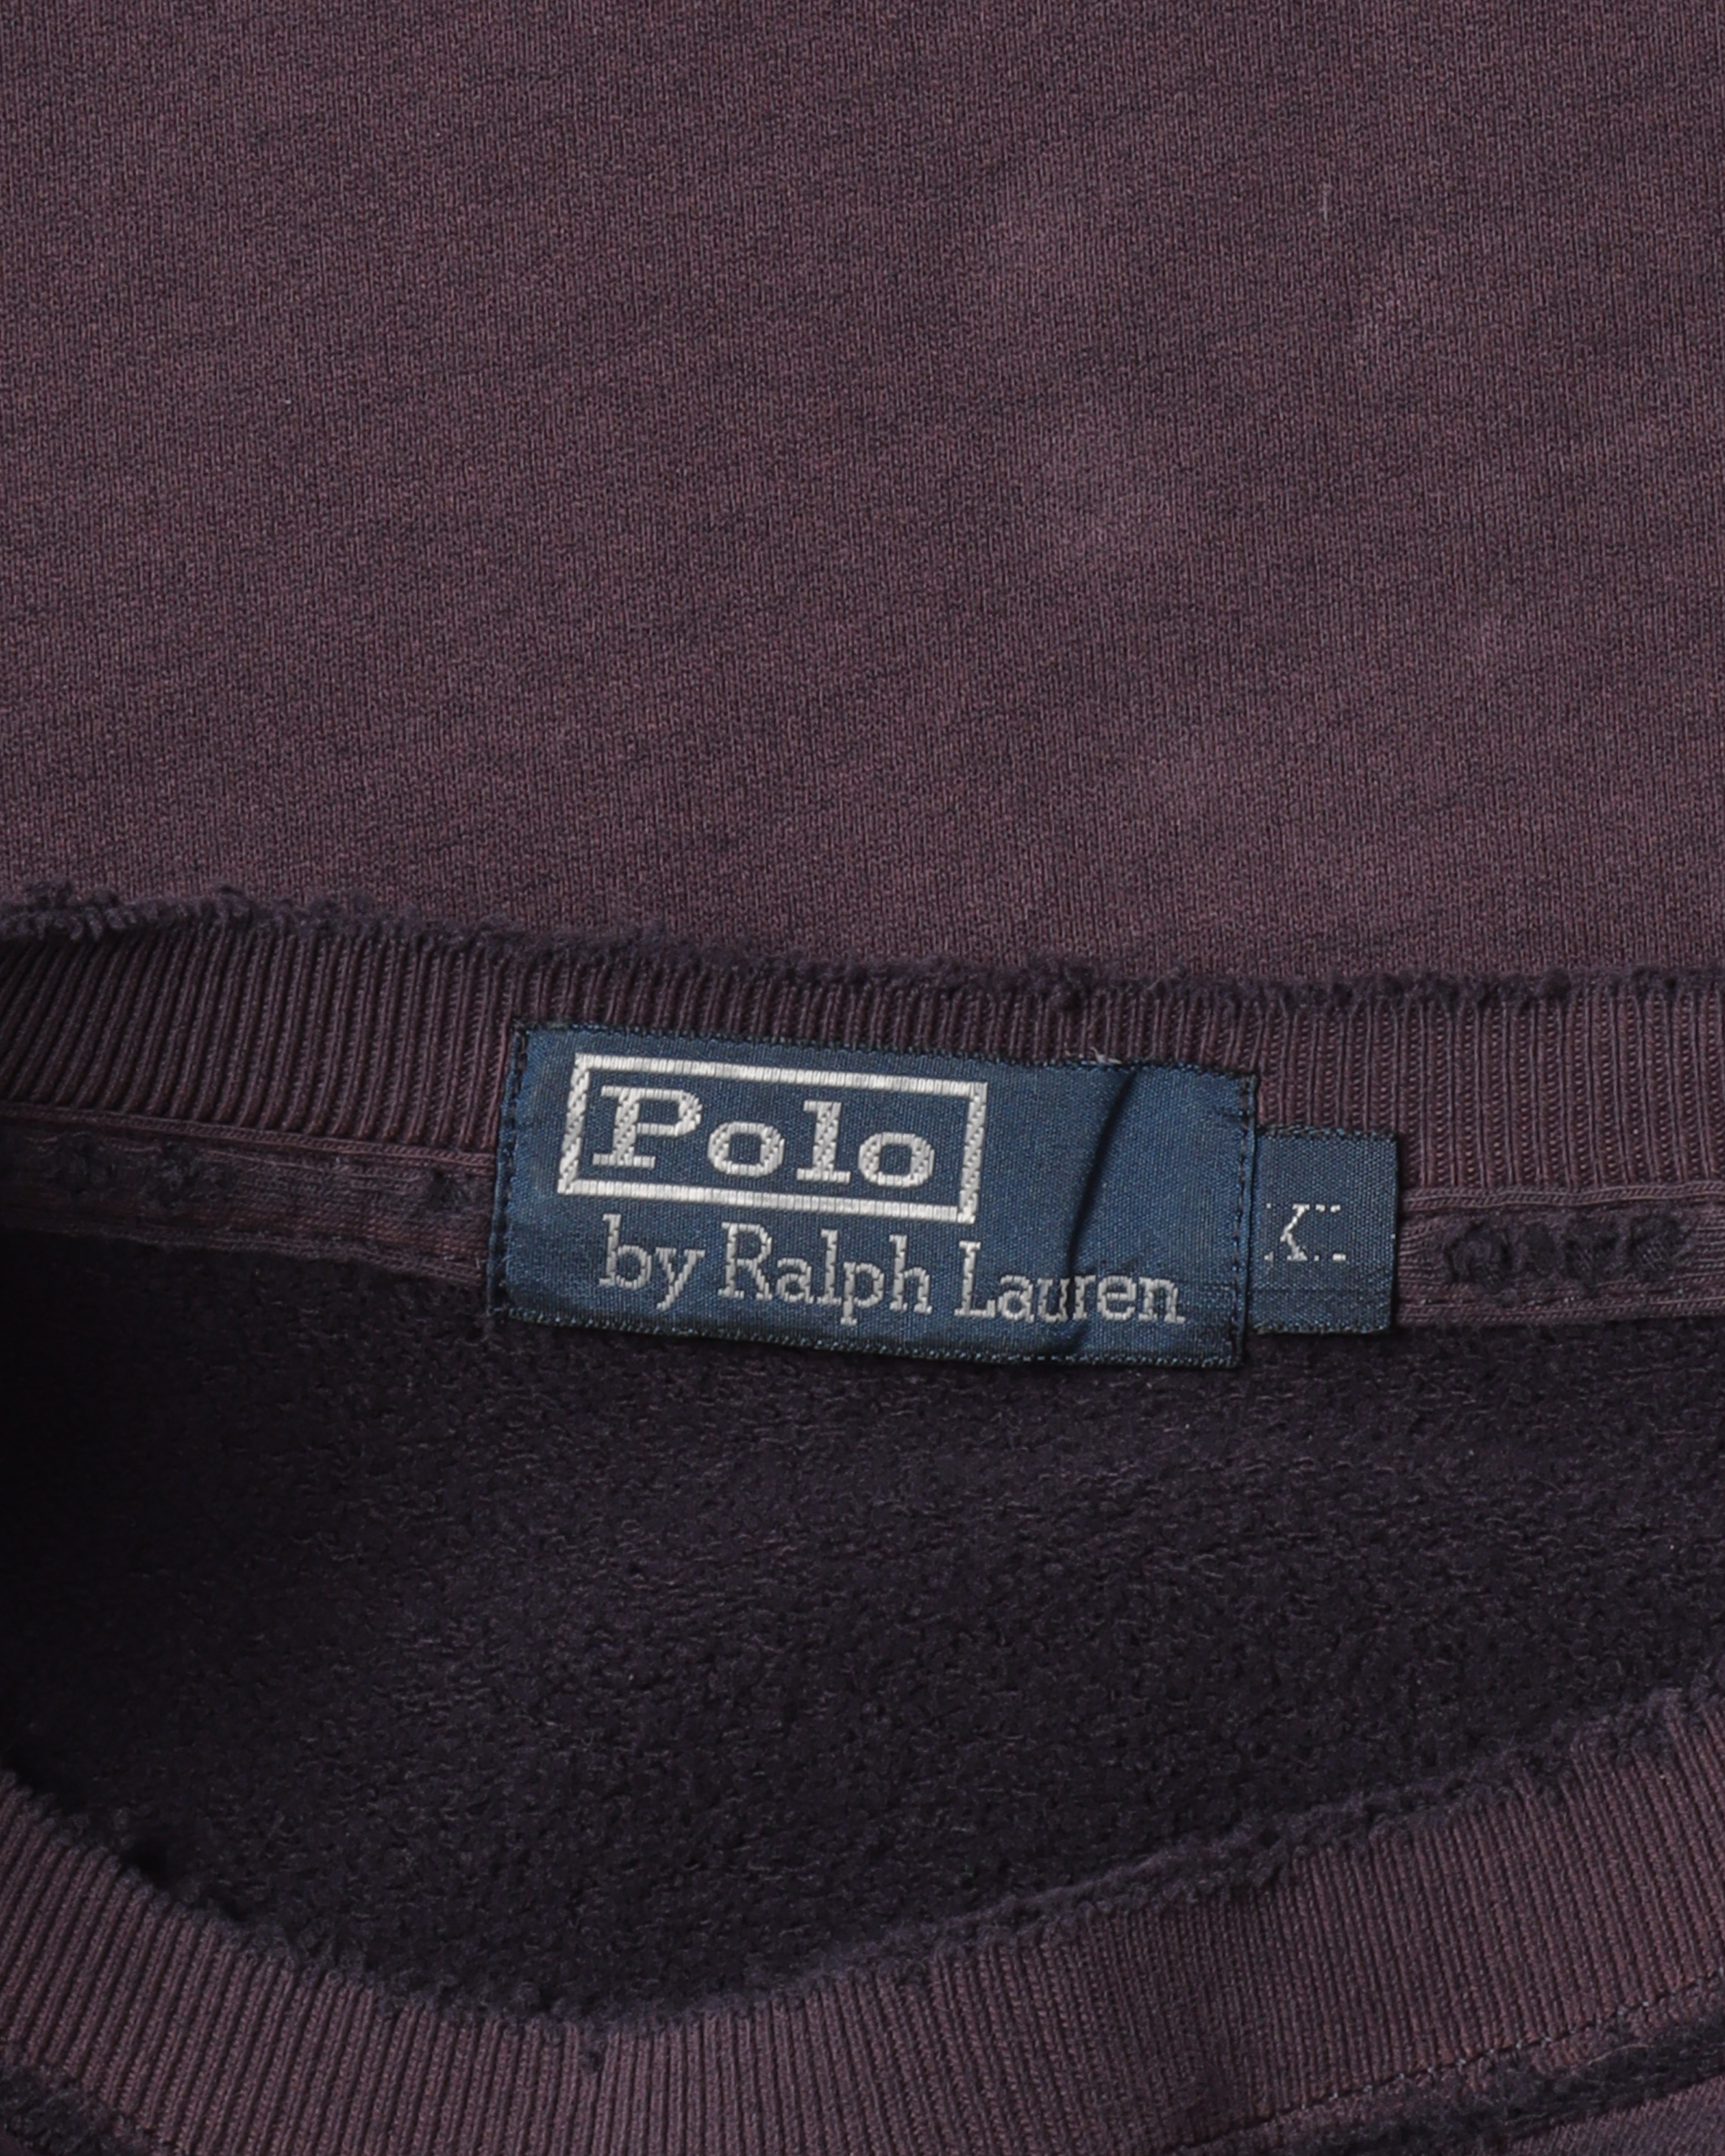 Polo by Ralph Lauren Crewneck Sweatshirt